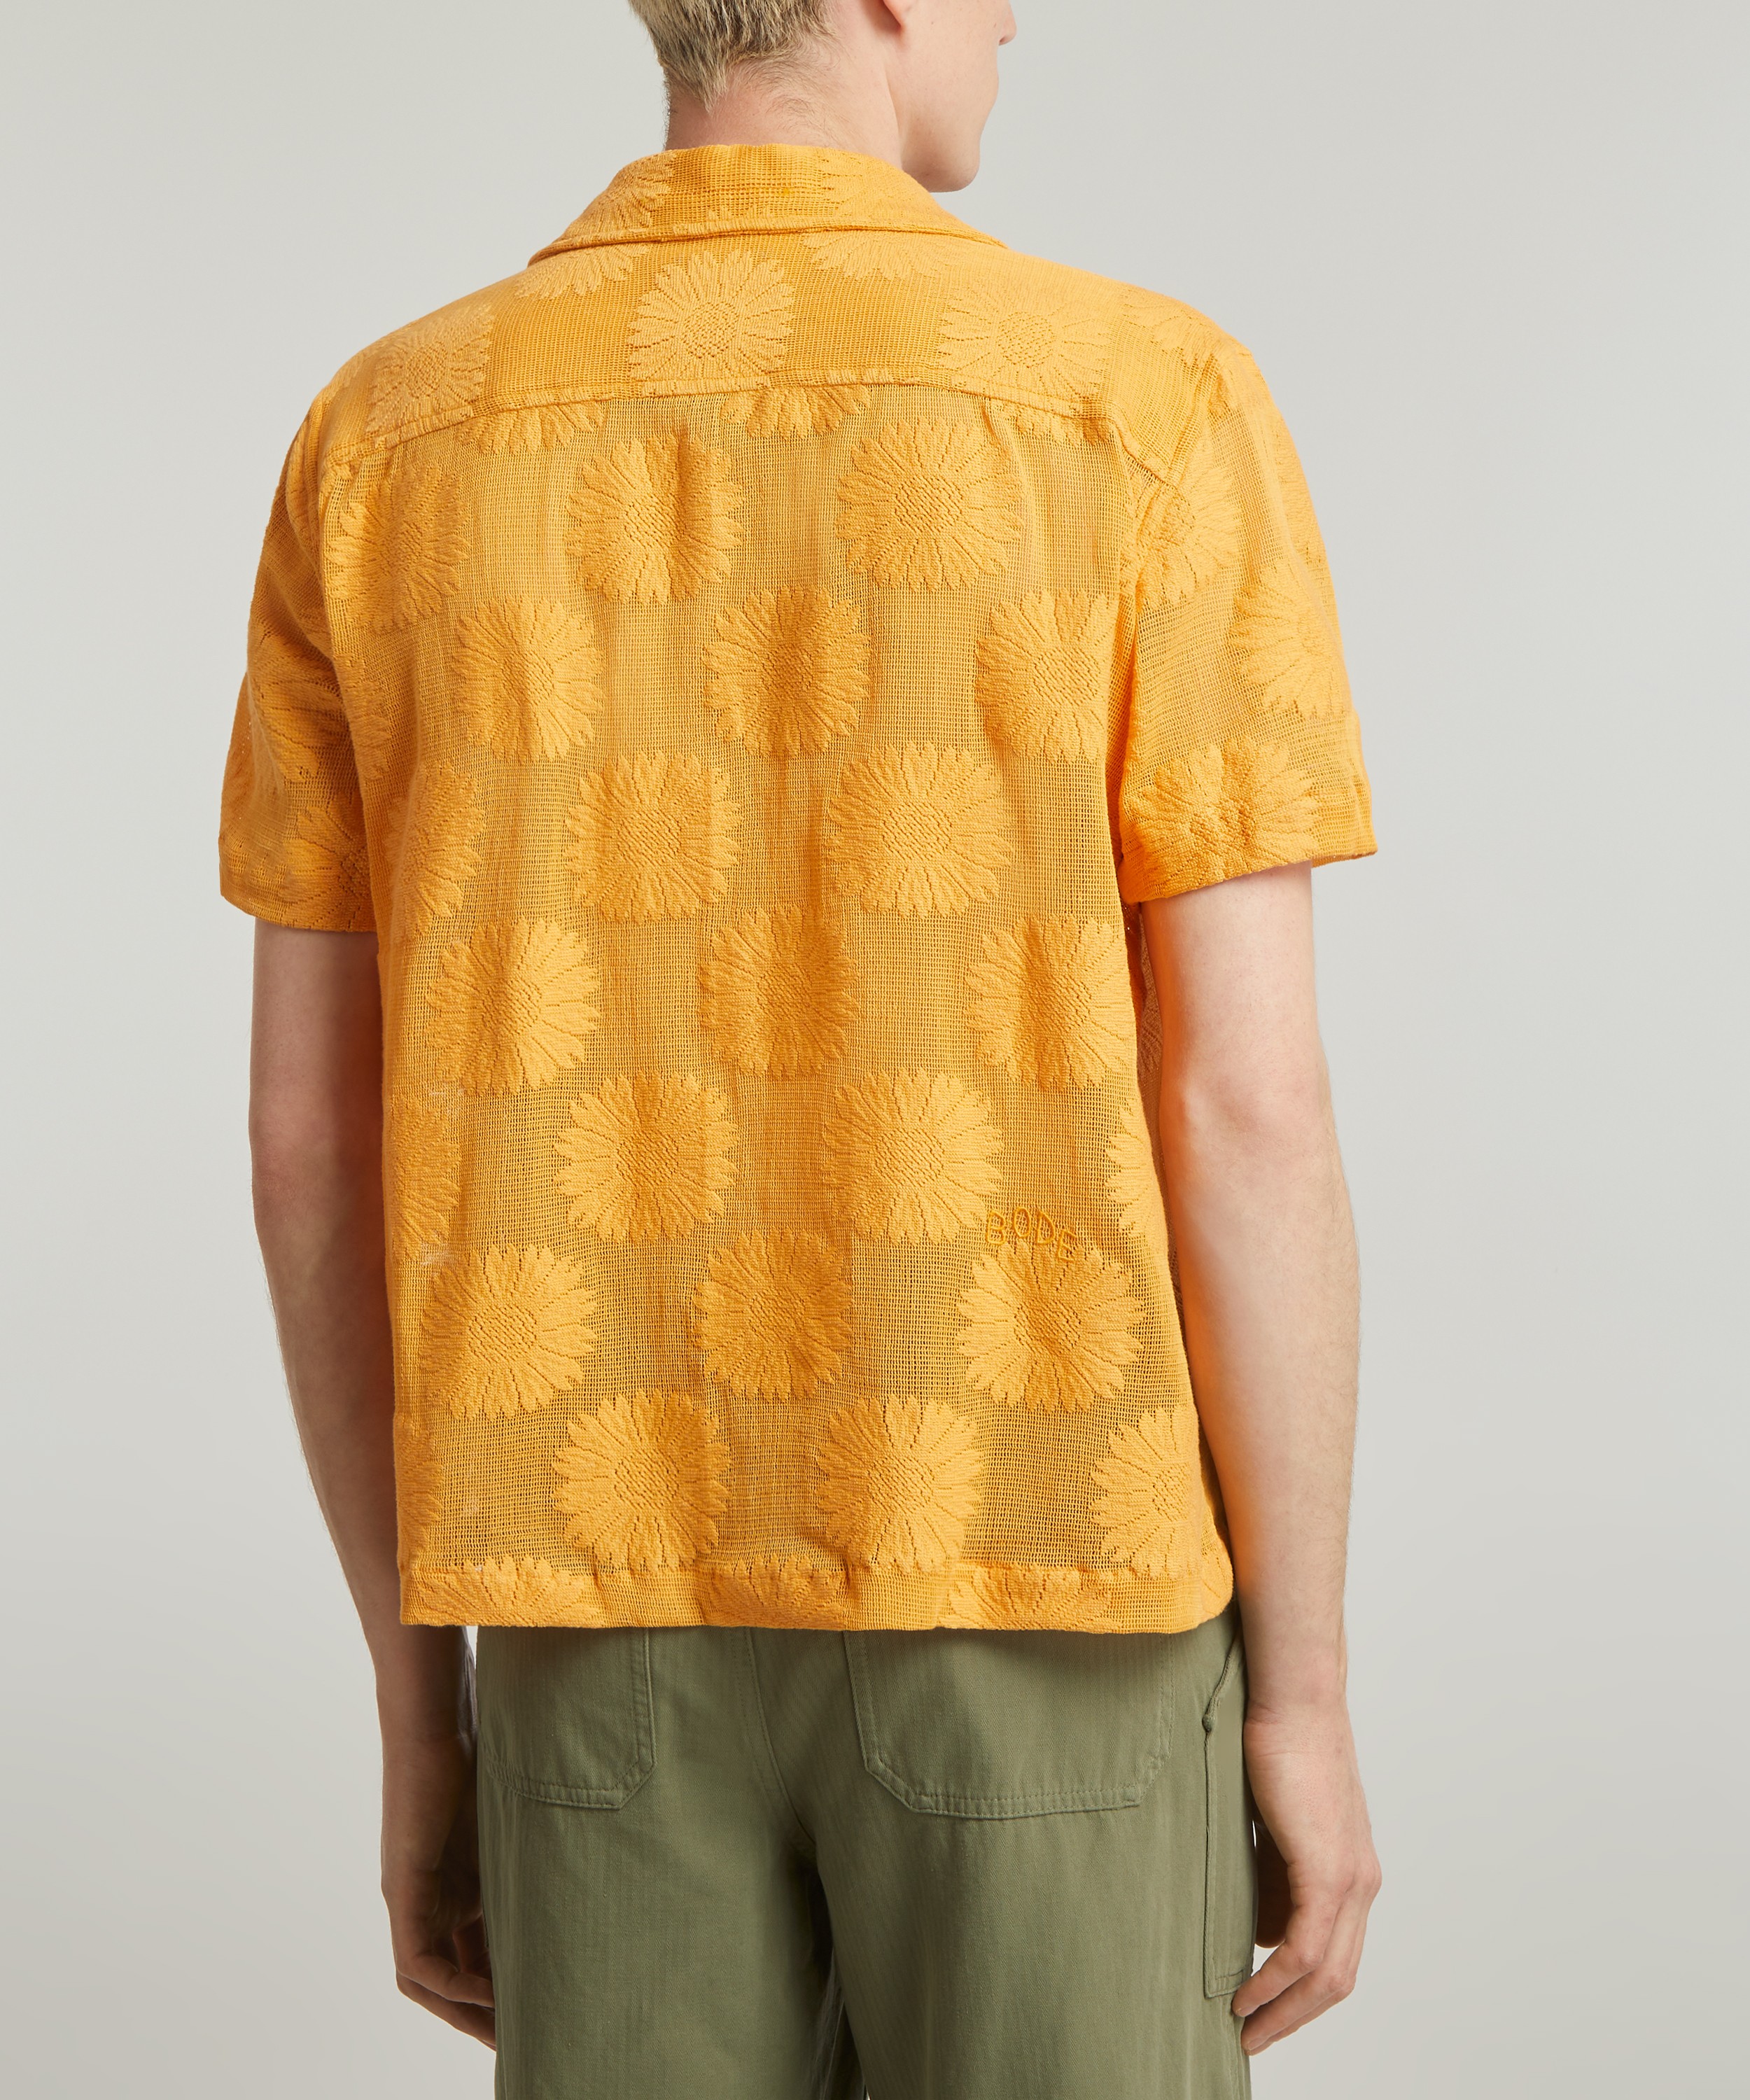 Bode Sunflower Lace Short Sleeve Shirt | Liberty